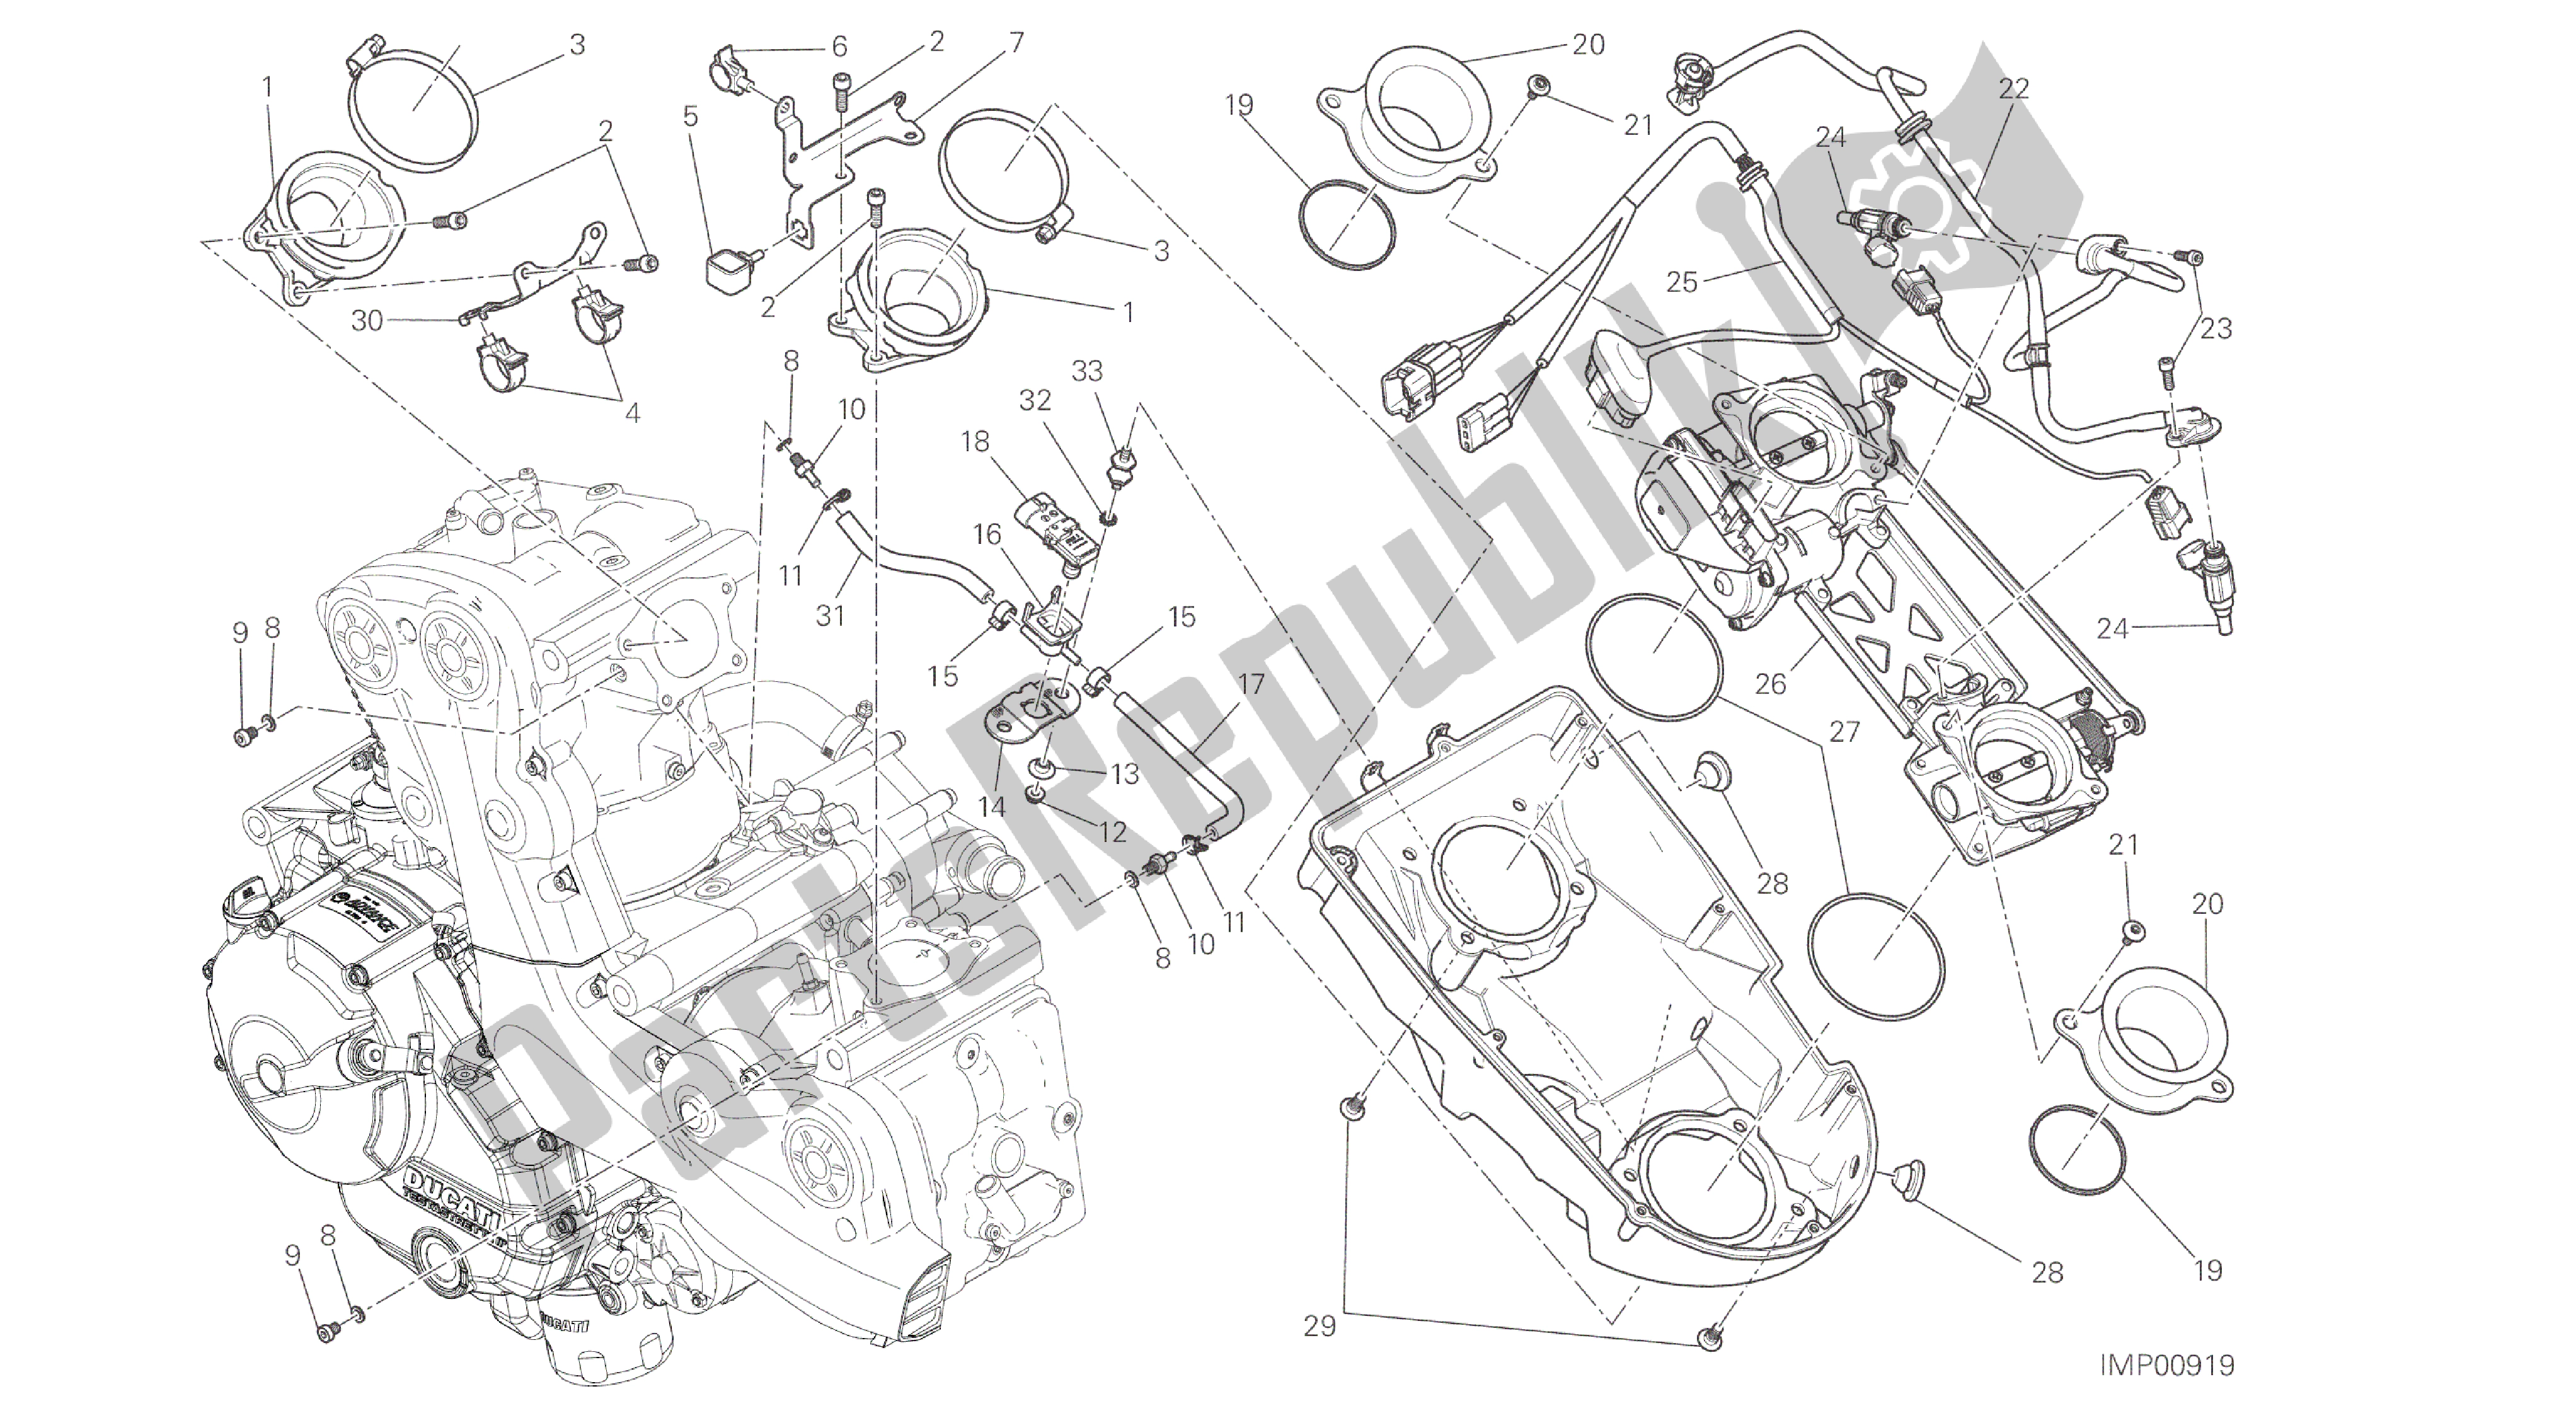 Alle onderdelen voor de Tekening 017 - Gasklephuis [mod: M 821; Xst: Aus, Eur, Fra, Jap] Groepsframe van de Ducati Monster 821 2014